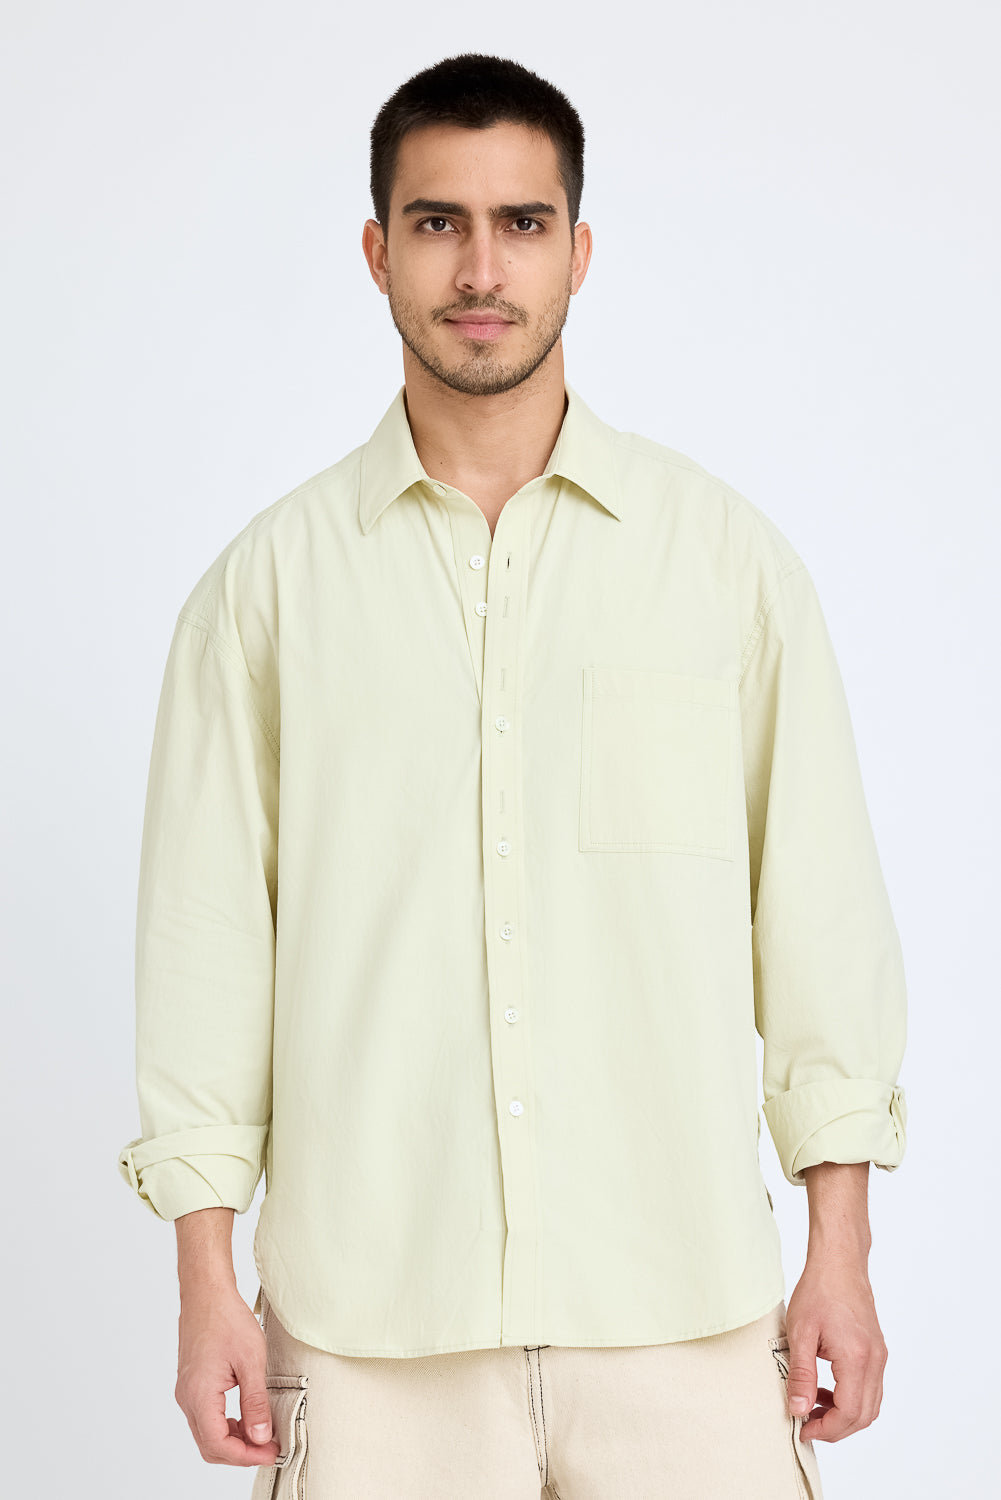 Lemon Stiff-collar shirt